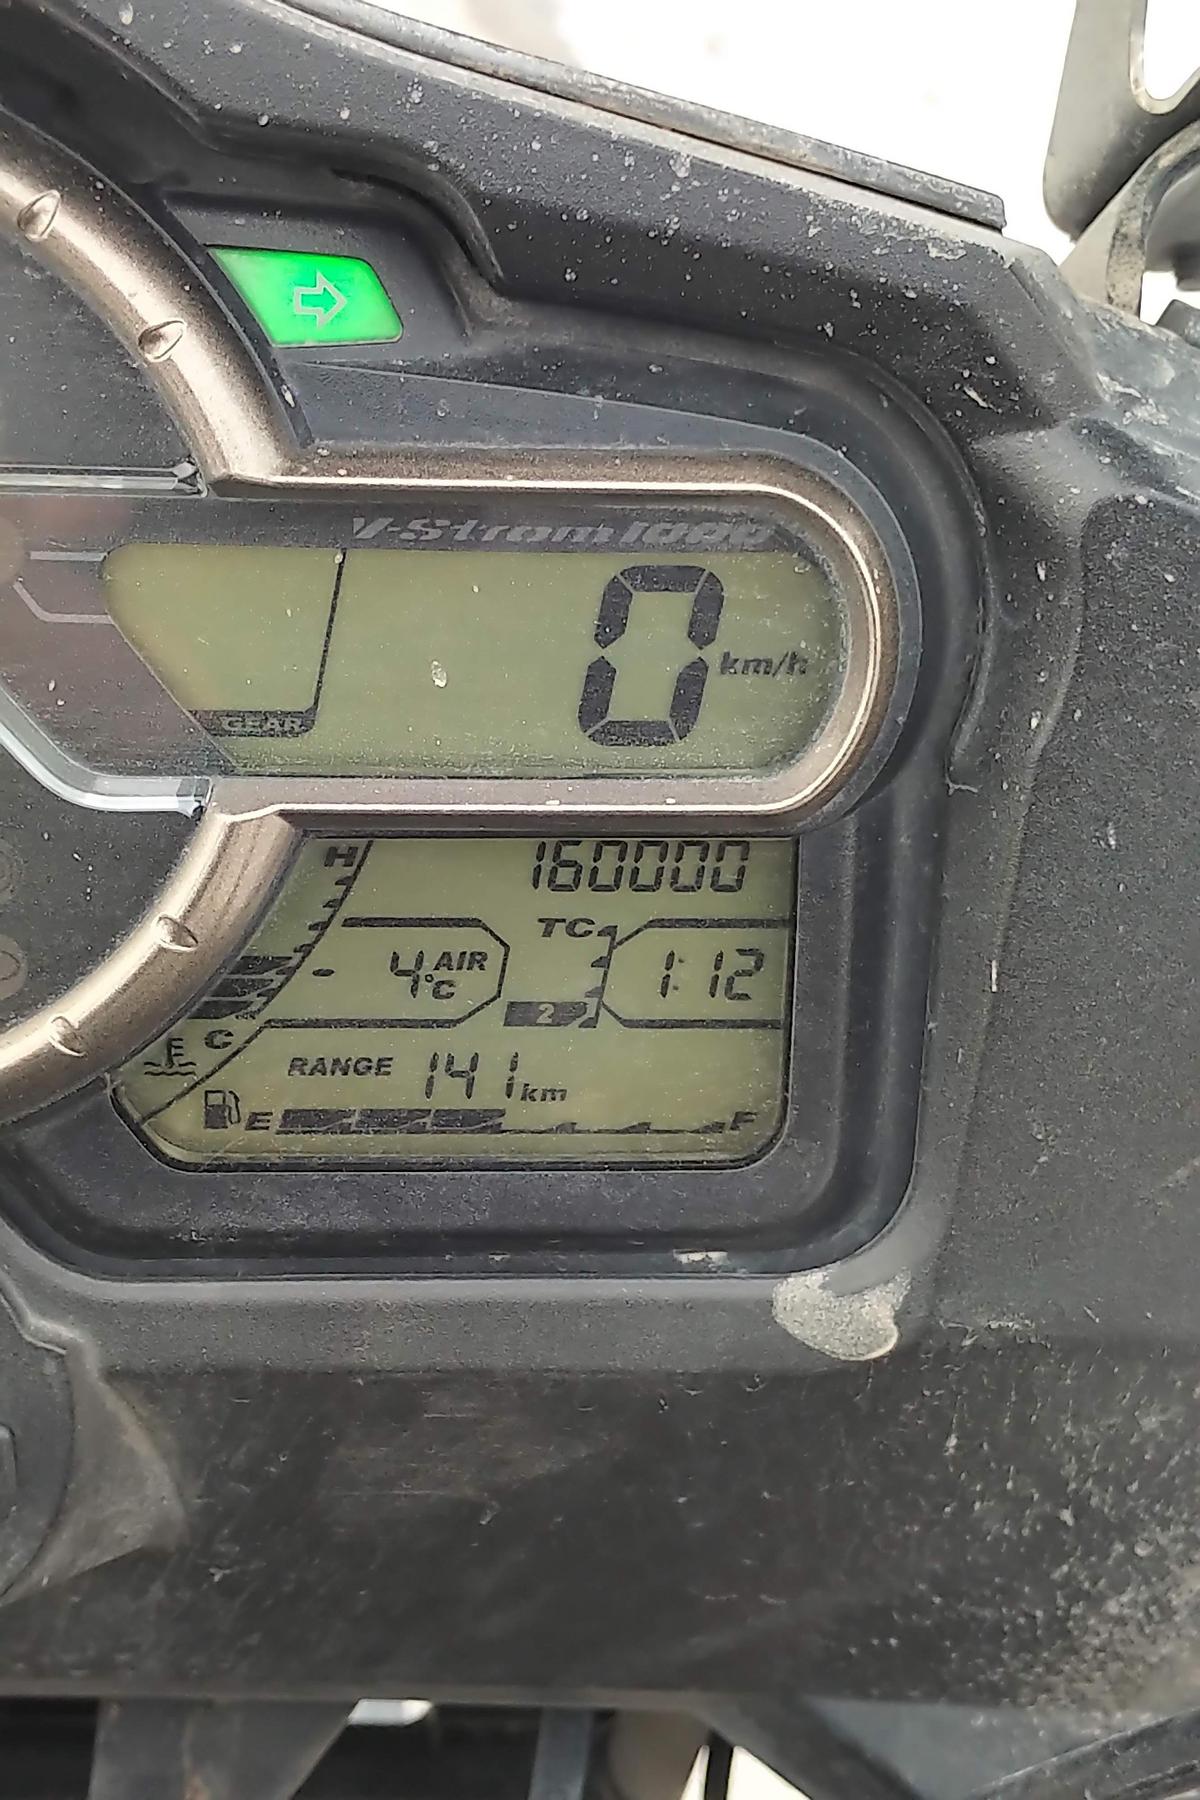 160000 km to miles